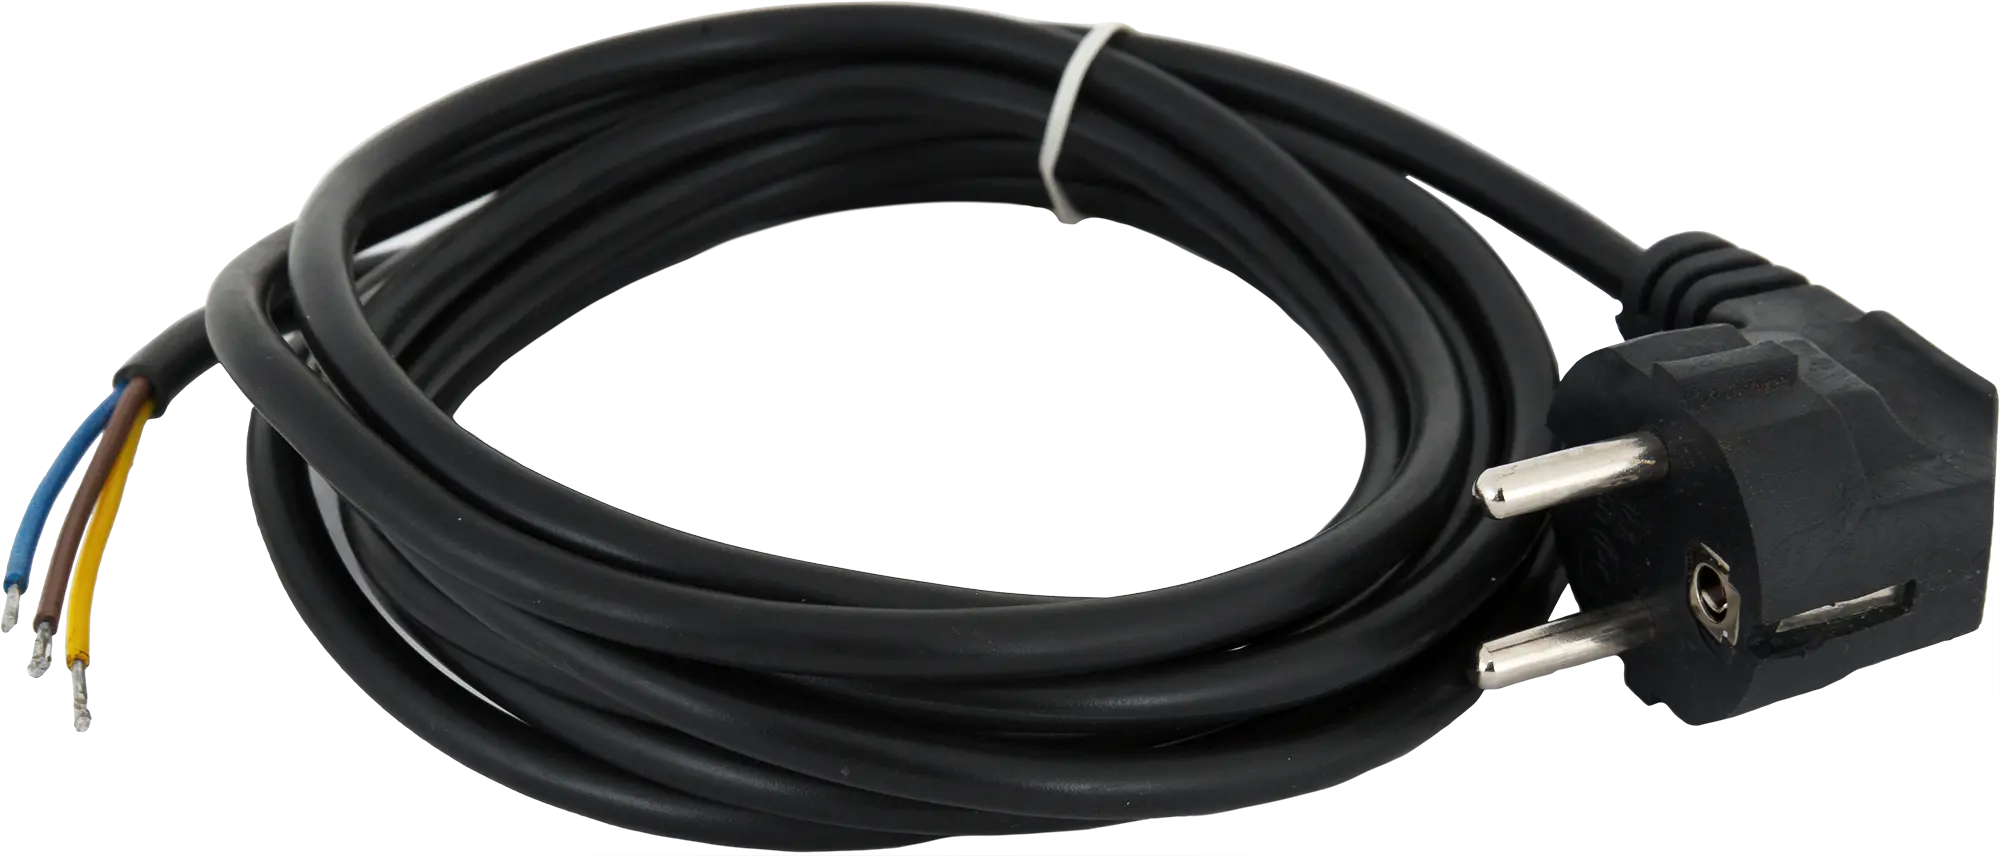 Шнур сетевой с заземлением 10 A 3 м цвет чёрный шнур сетевой с заземлением 16 a 3 м цвет чёрный